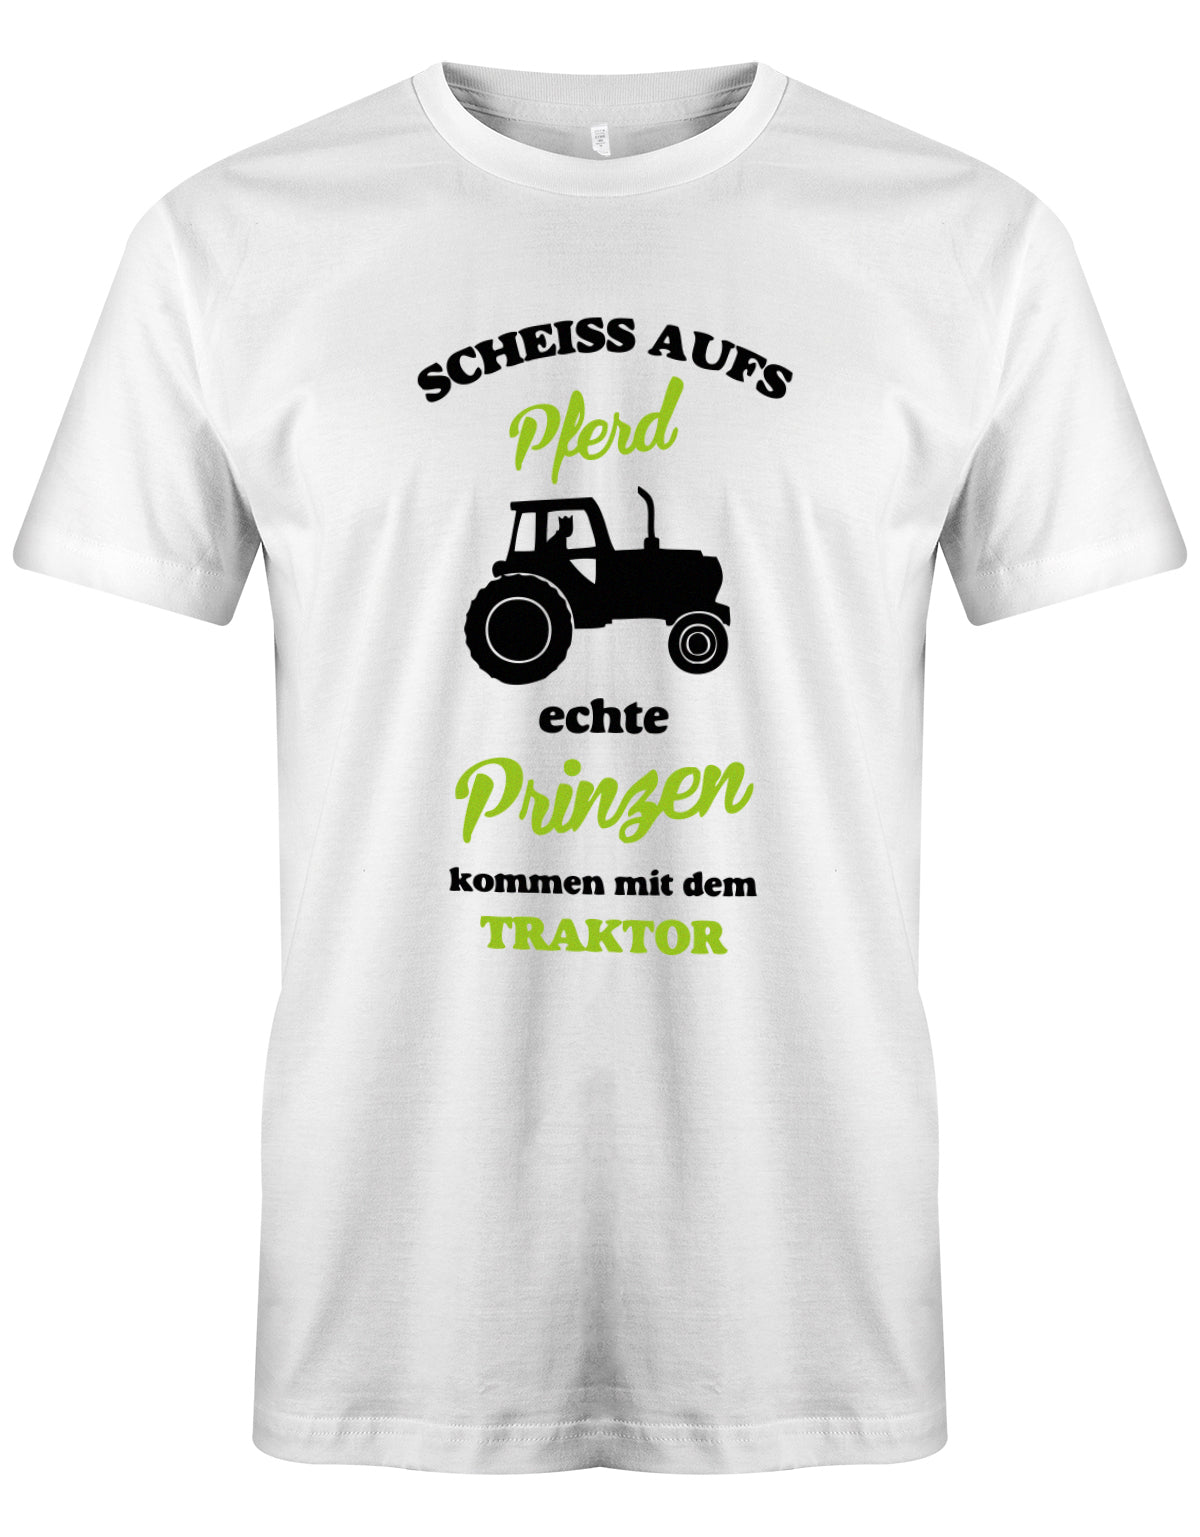 Landwirtschaft Shirt Männer - Scheiss aufs Pferd, echte Prinzen kommen mit dem Traktor.   Weiss